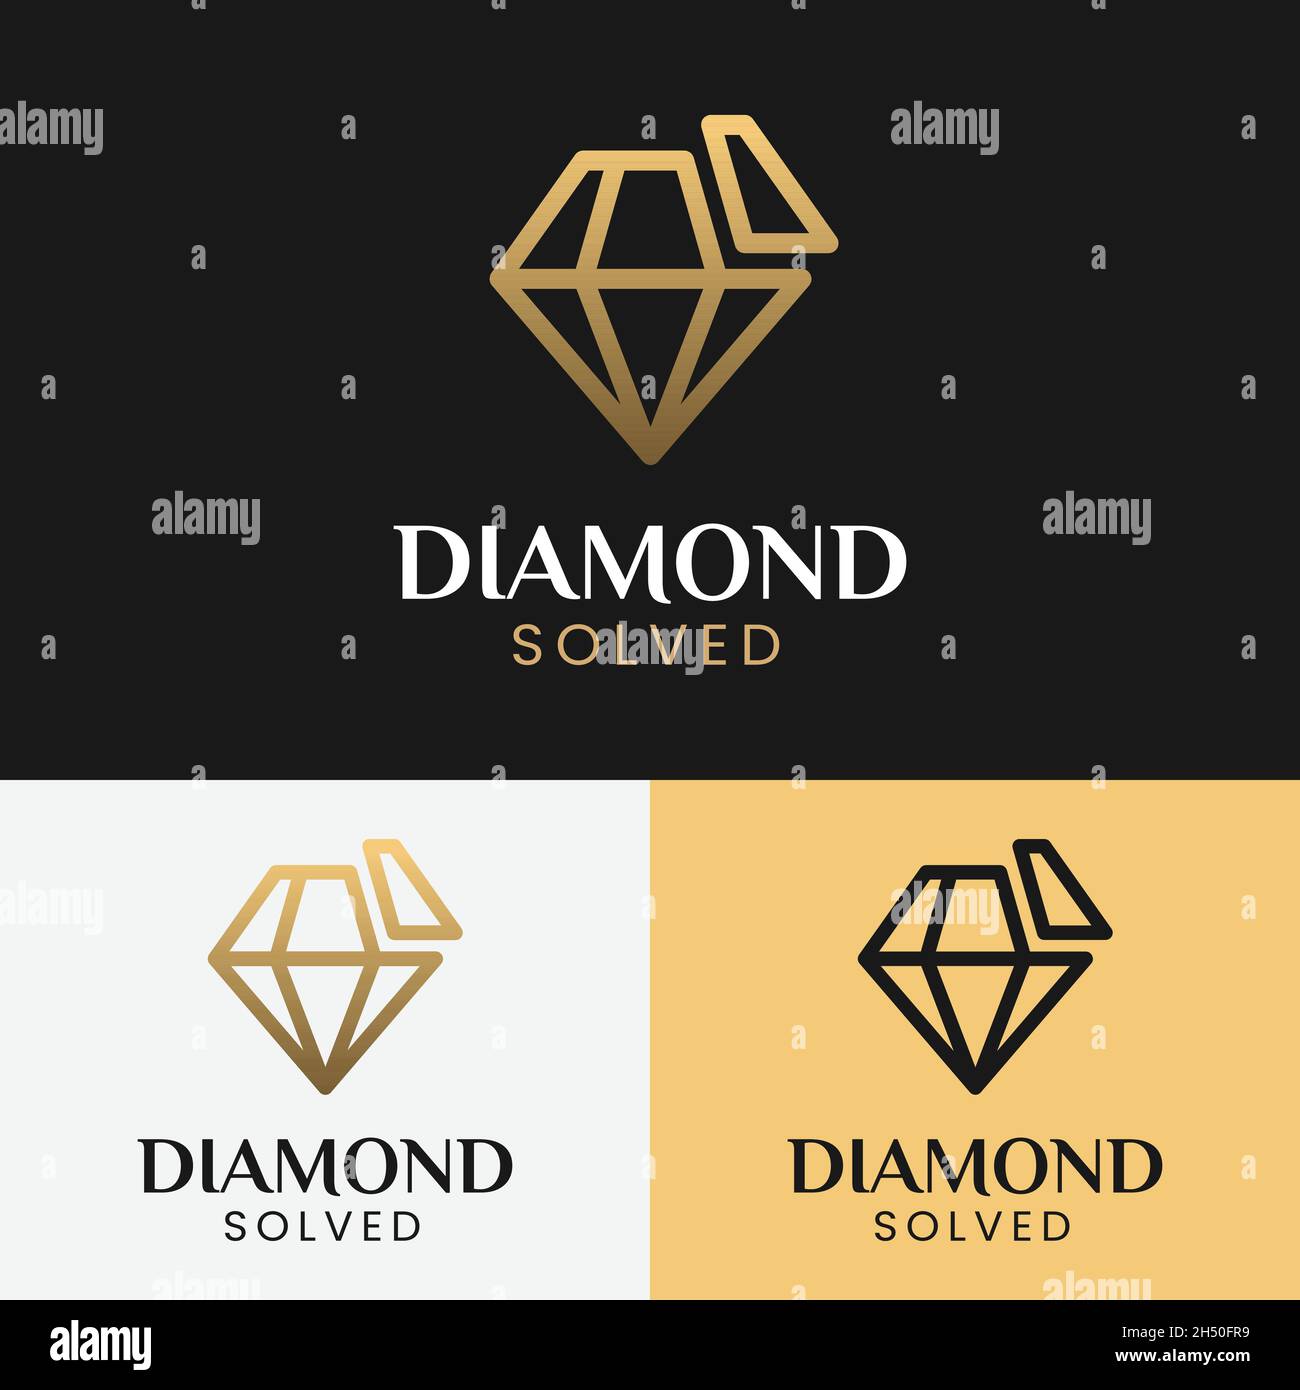 Modello di design con logo Diamante risolto in linea. Adatto per Gioielli Gioielli Moda Boutique Apparel Shop Store Business Brand Company Logo. Illustrazione Vettoriale